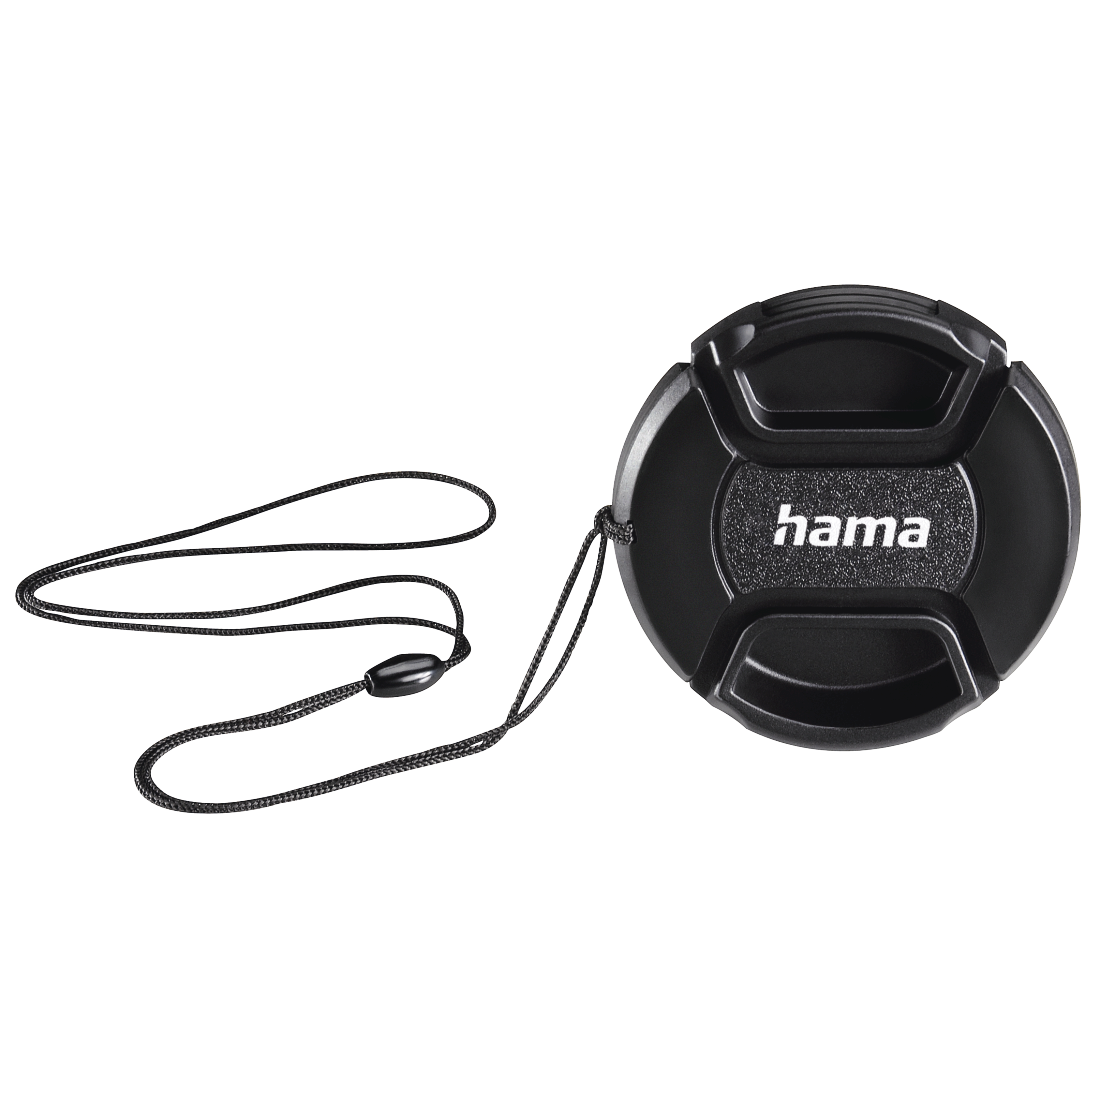 Hama Objektivdeckel Super-Snap für Aufsteckfassung 72,0 mm 